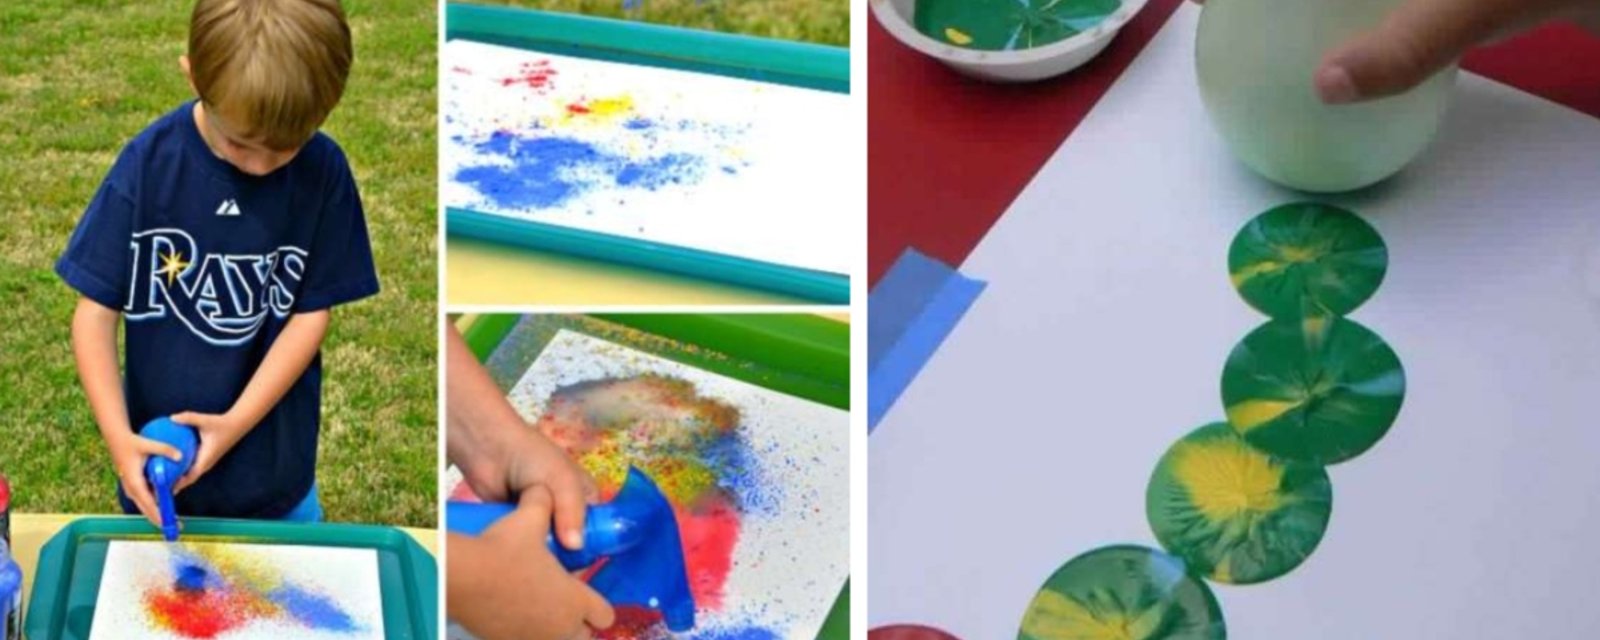 15 techniques de peinture à tester avec les enfants 